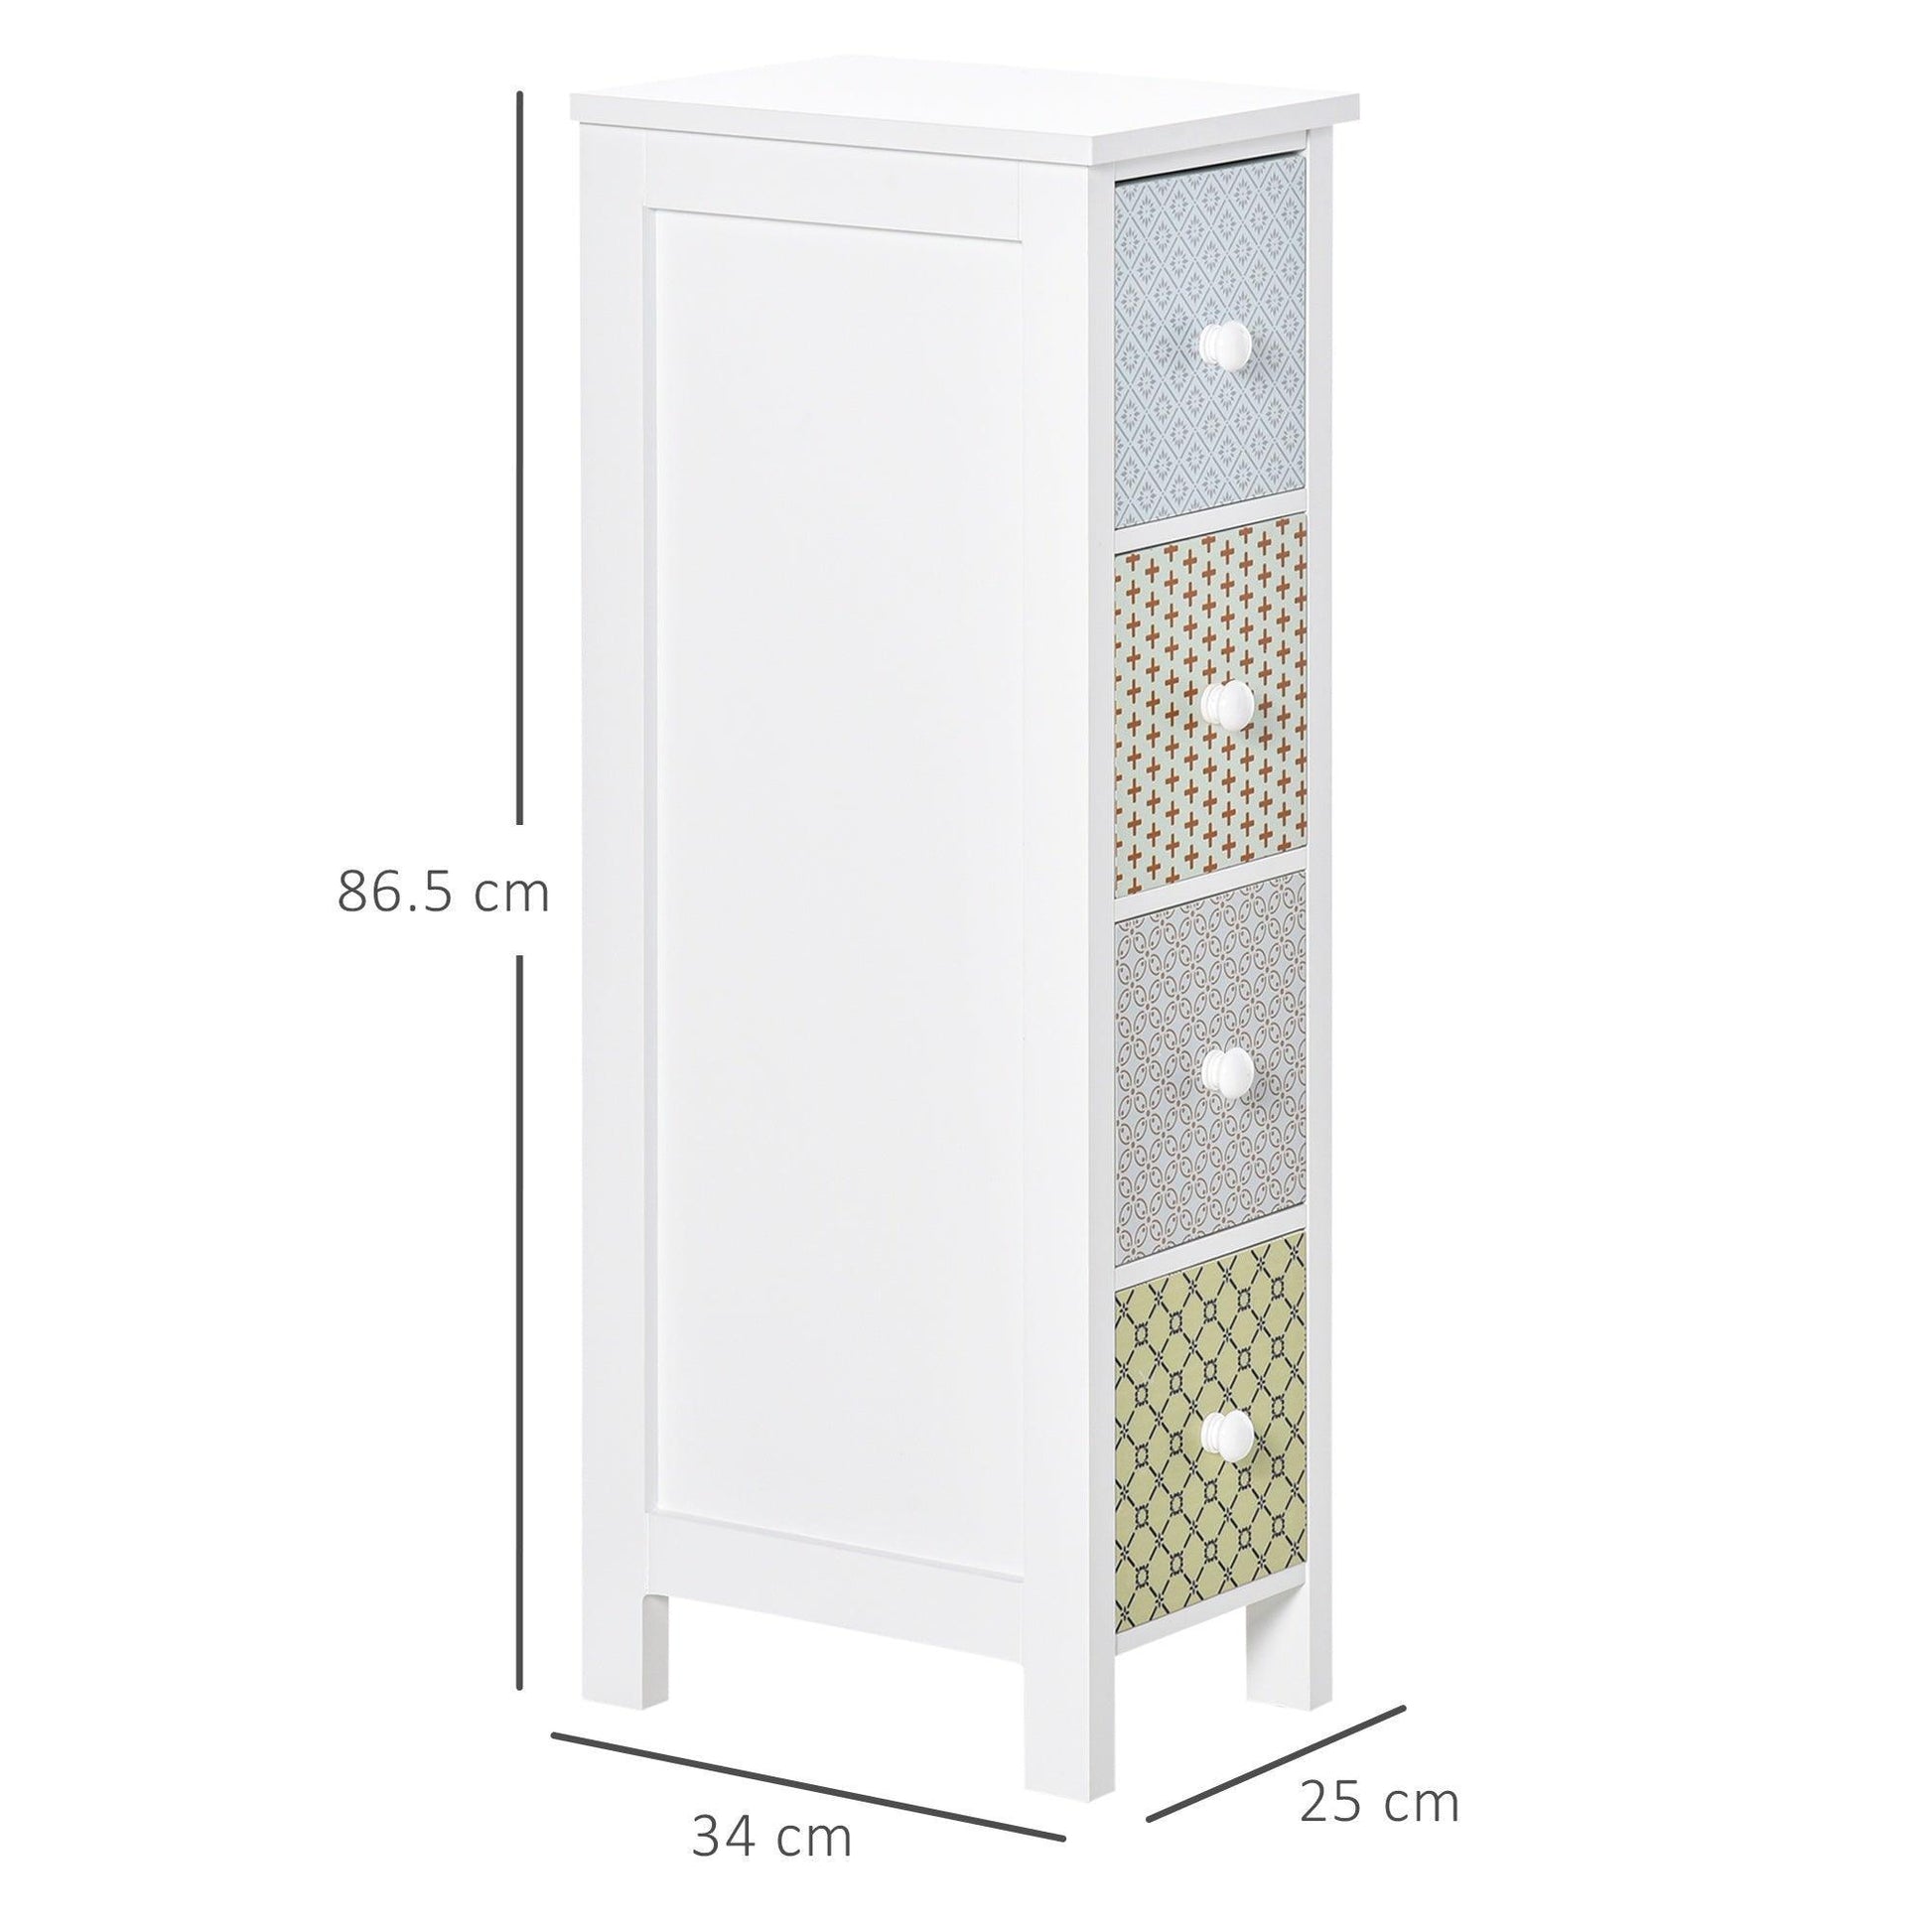 HOMCOM Toilet Tissue Cabinet, 4-Drawer Dresser - Simplistic Storage - ALL4U RETAILER LTD